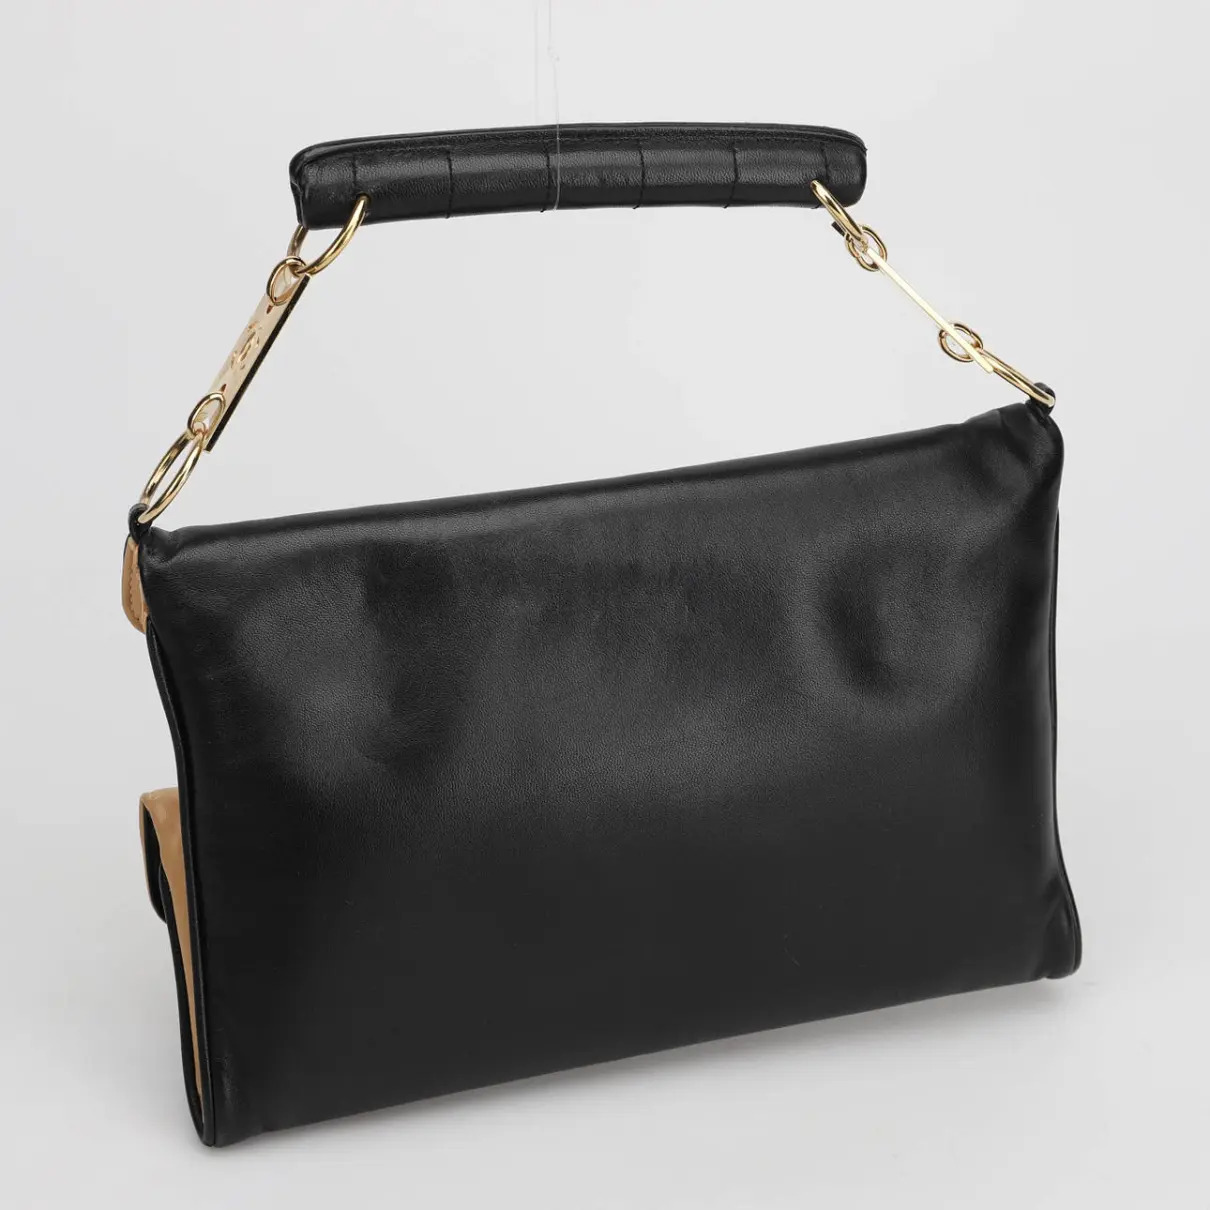 Buy Chanel Leather satchel online - Vintage